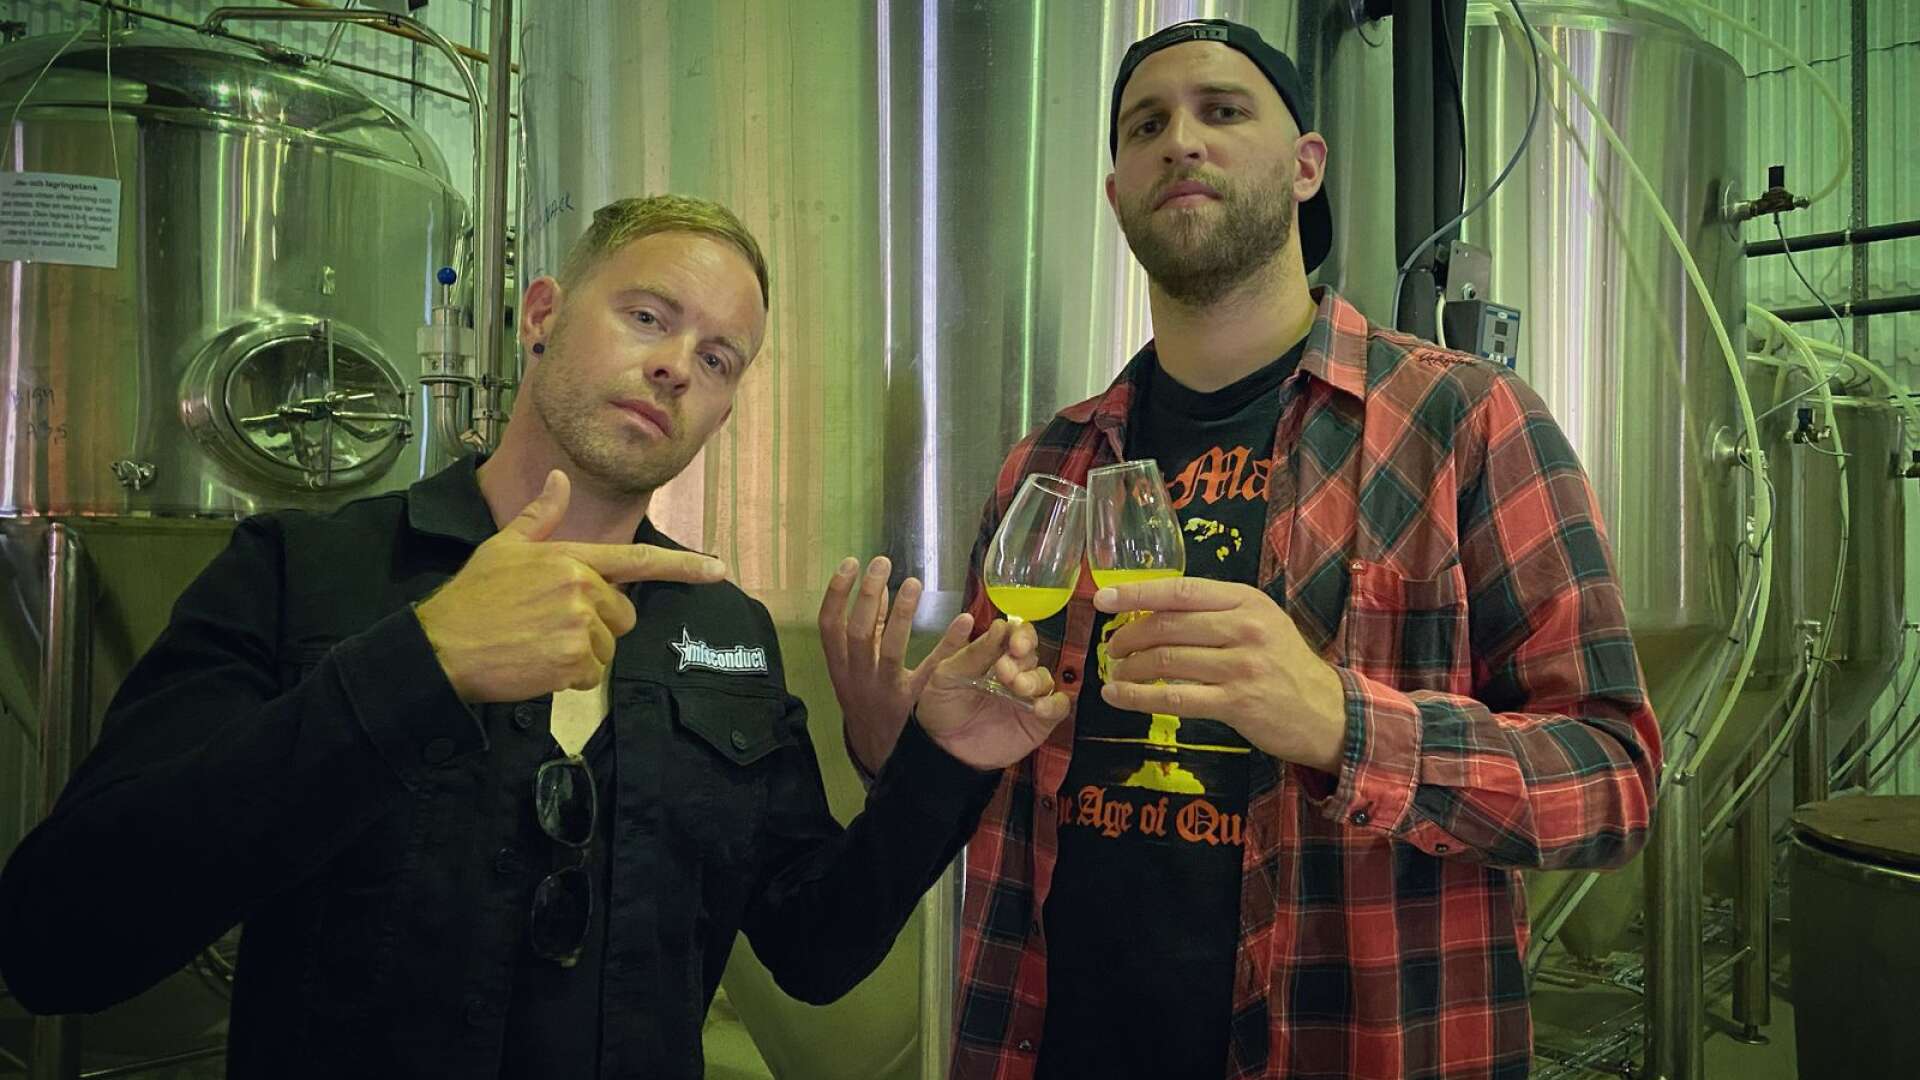 Fredrik Olsson och Simon Guidoum provsmakar var sitt glas av Stay true to your brew.